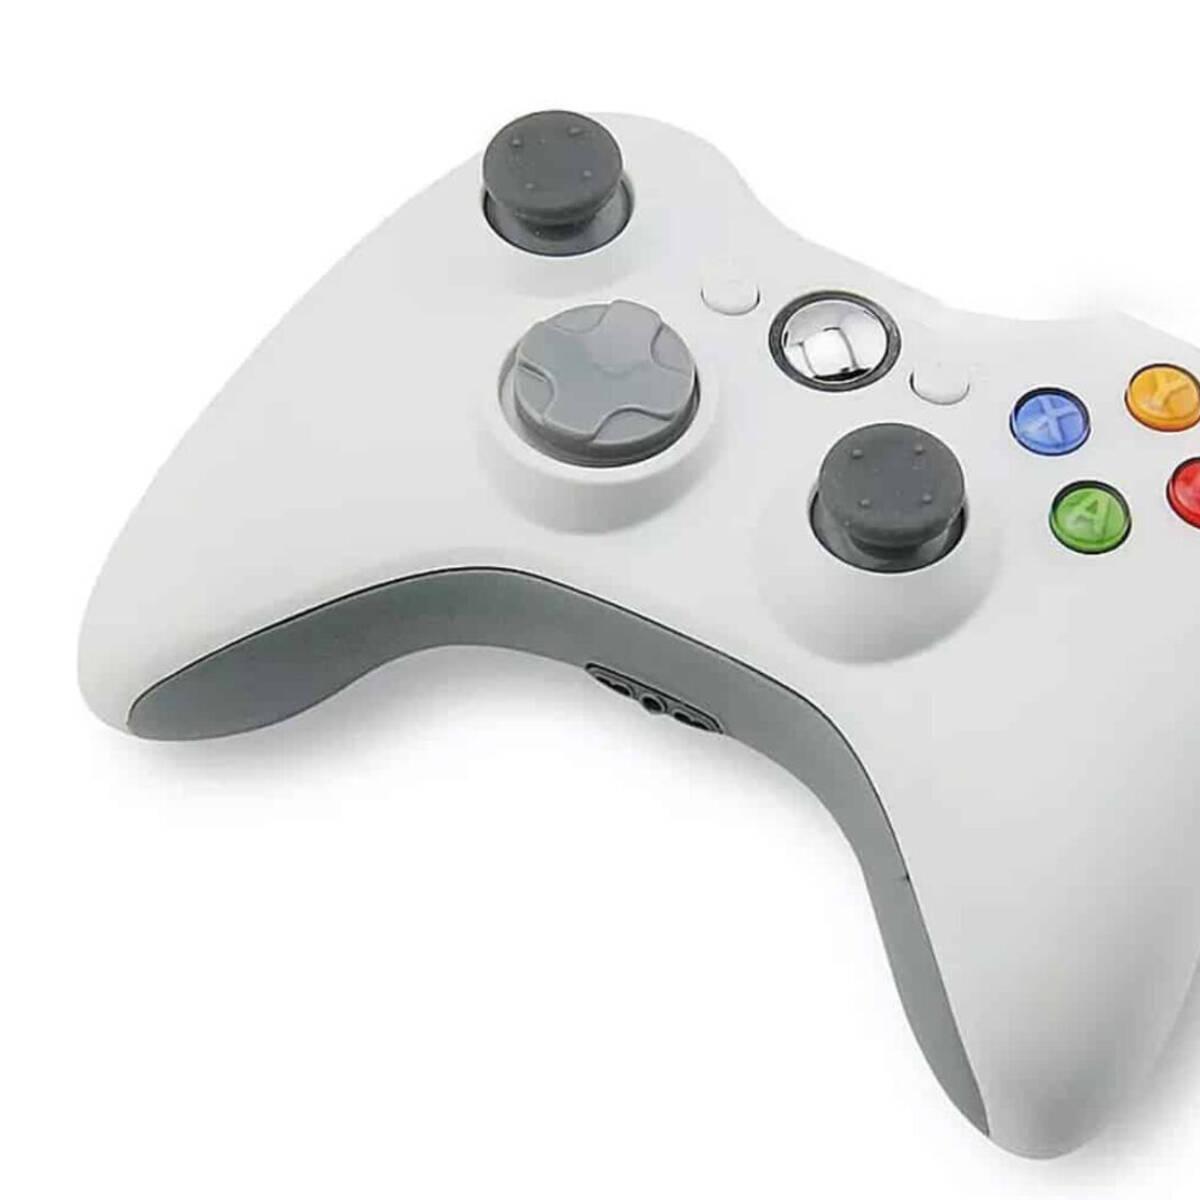 El mando original de Xbox 360 vuelve de la mano del fabricante Hyperkin -  Vandal